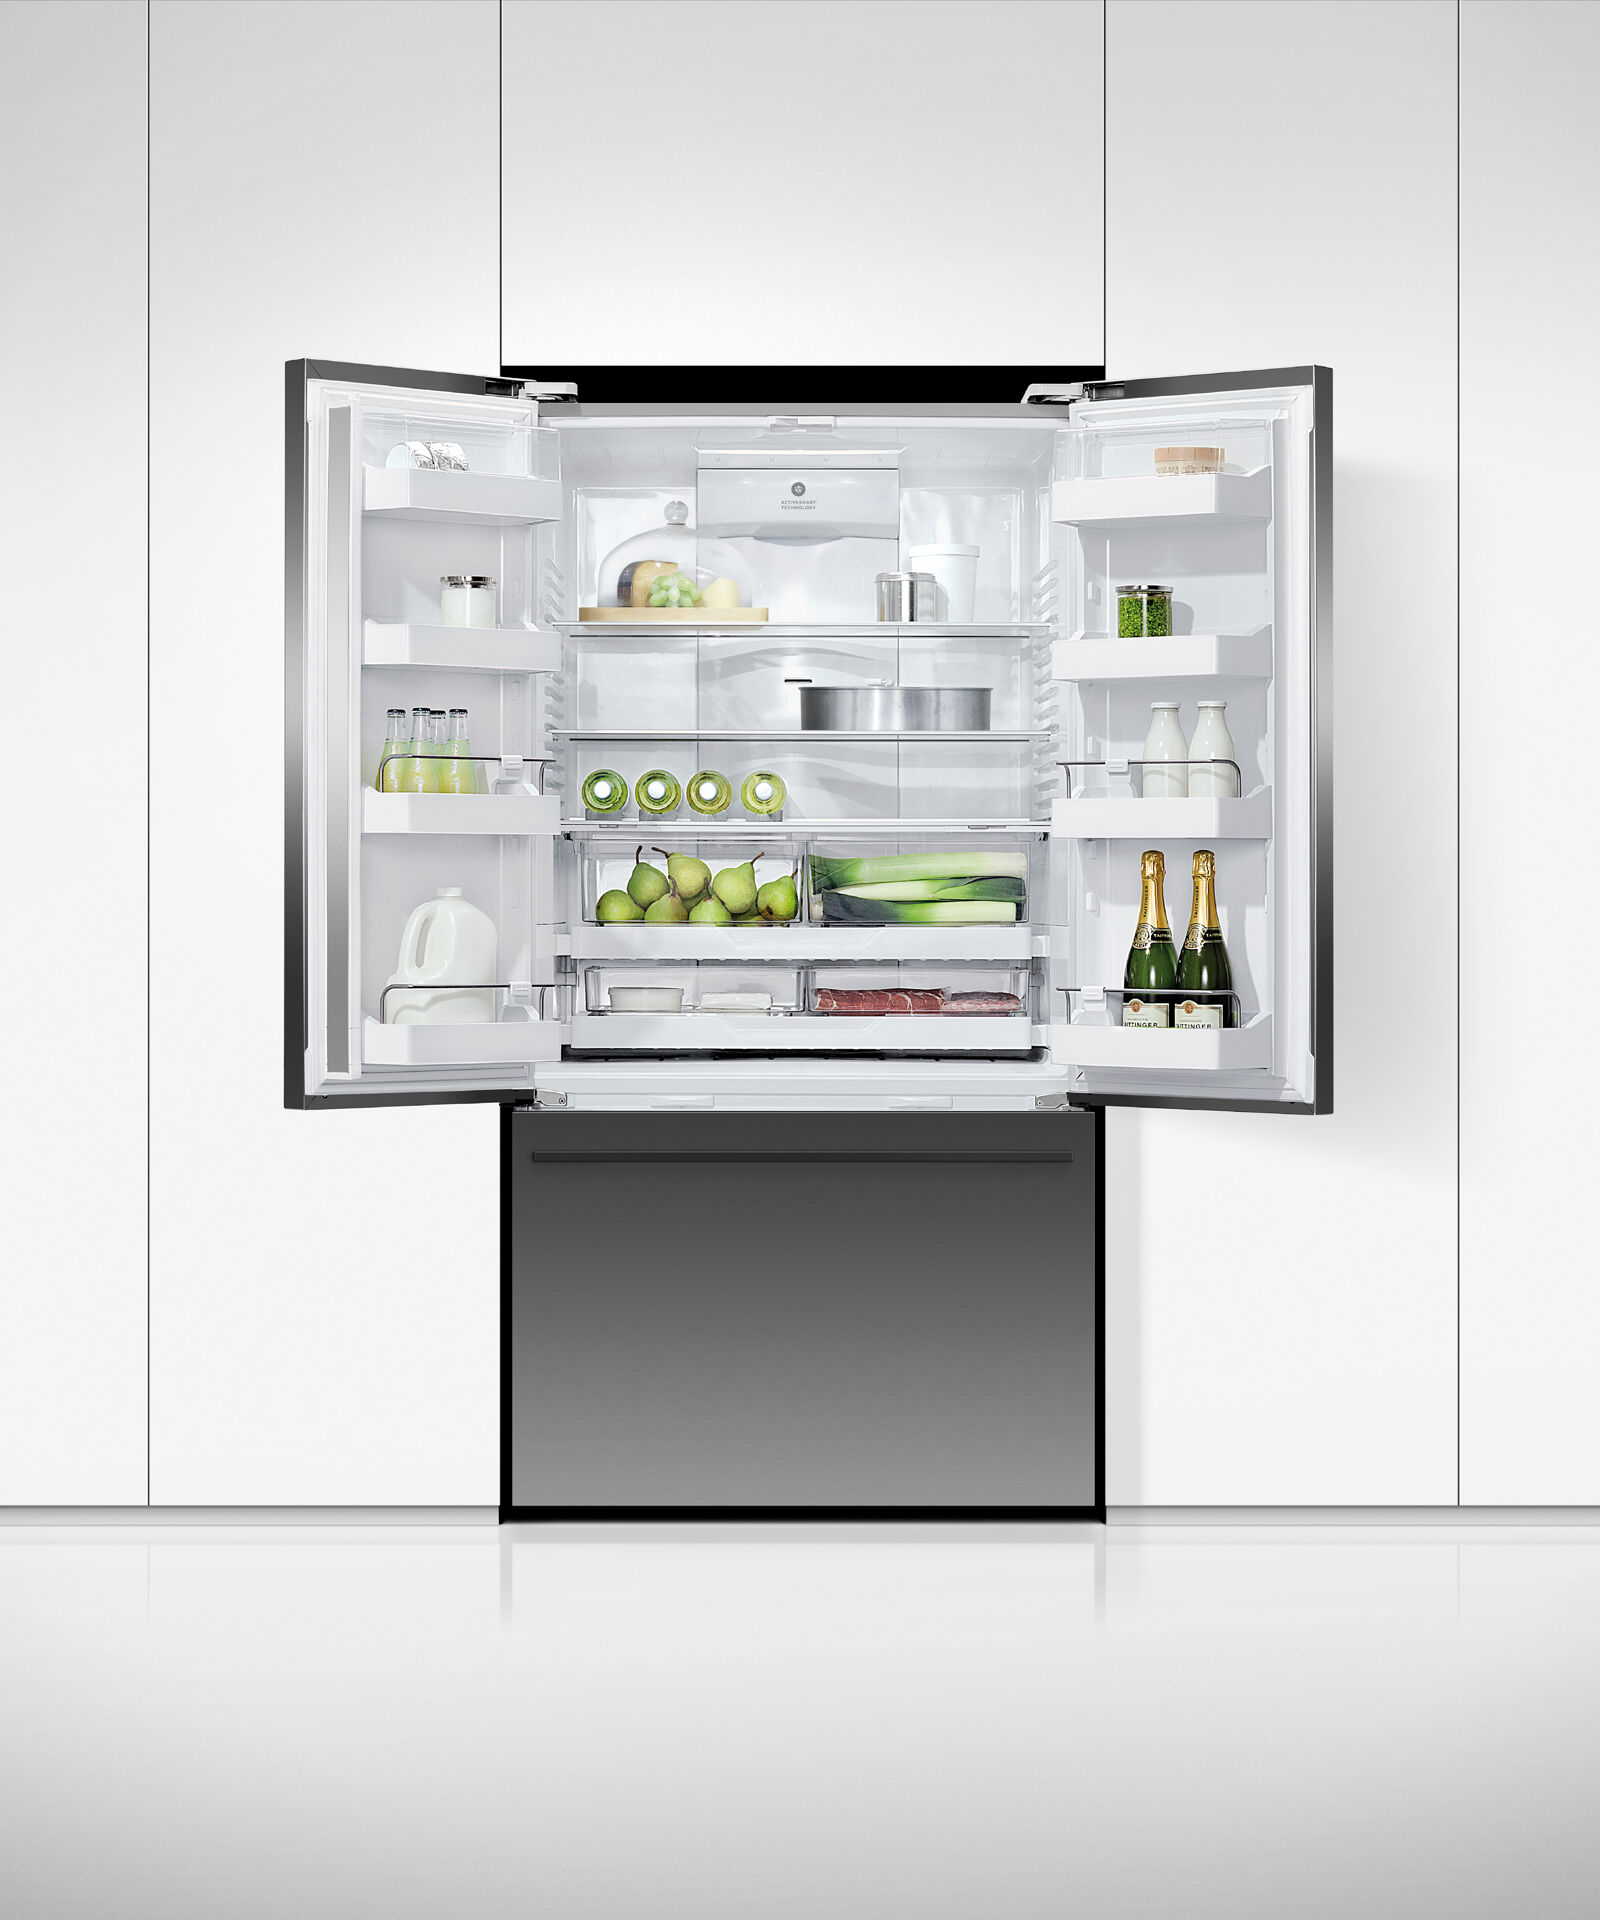 黑色法式對開門雪櫃, 90cm, 自動製冰和冰水, gallery image 4.0